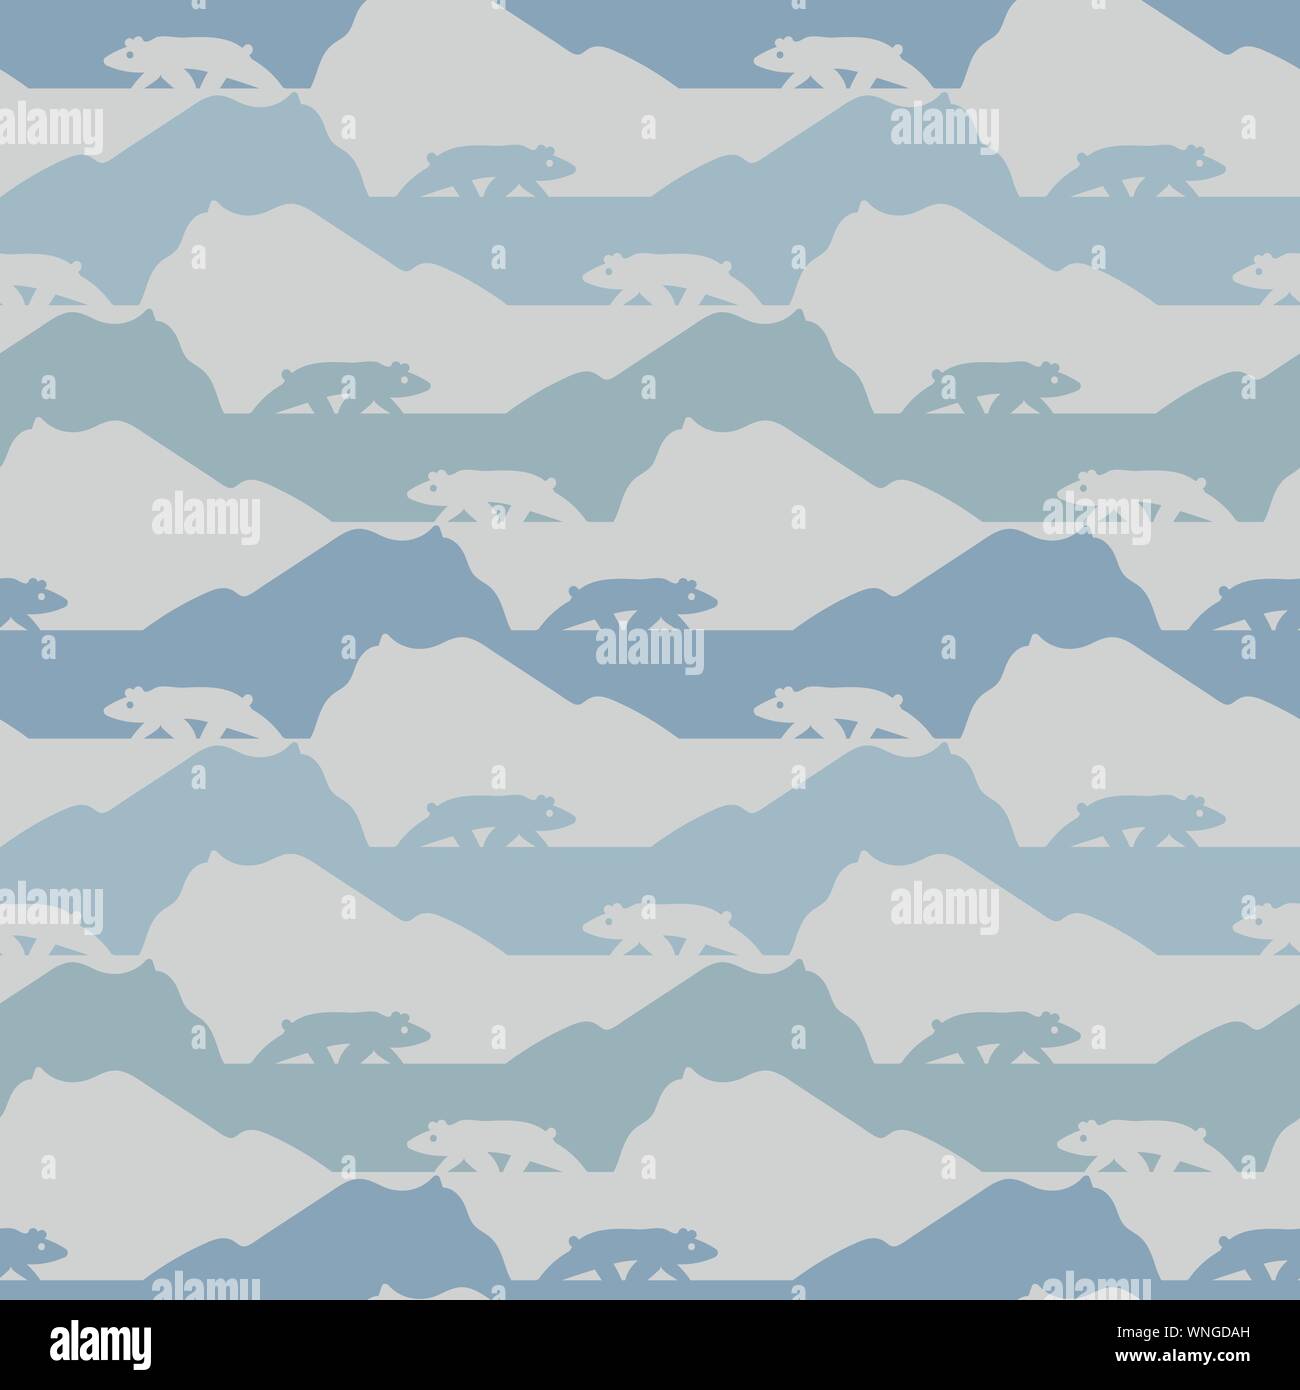 Seamless vector patrón de rayas con paisaje ártico y los osos polares siluetas Ilustración del Vector